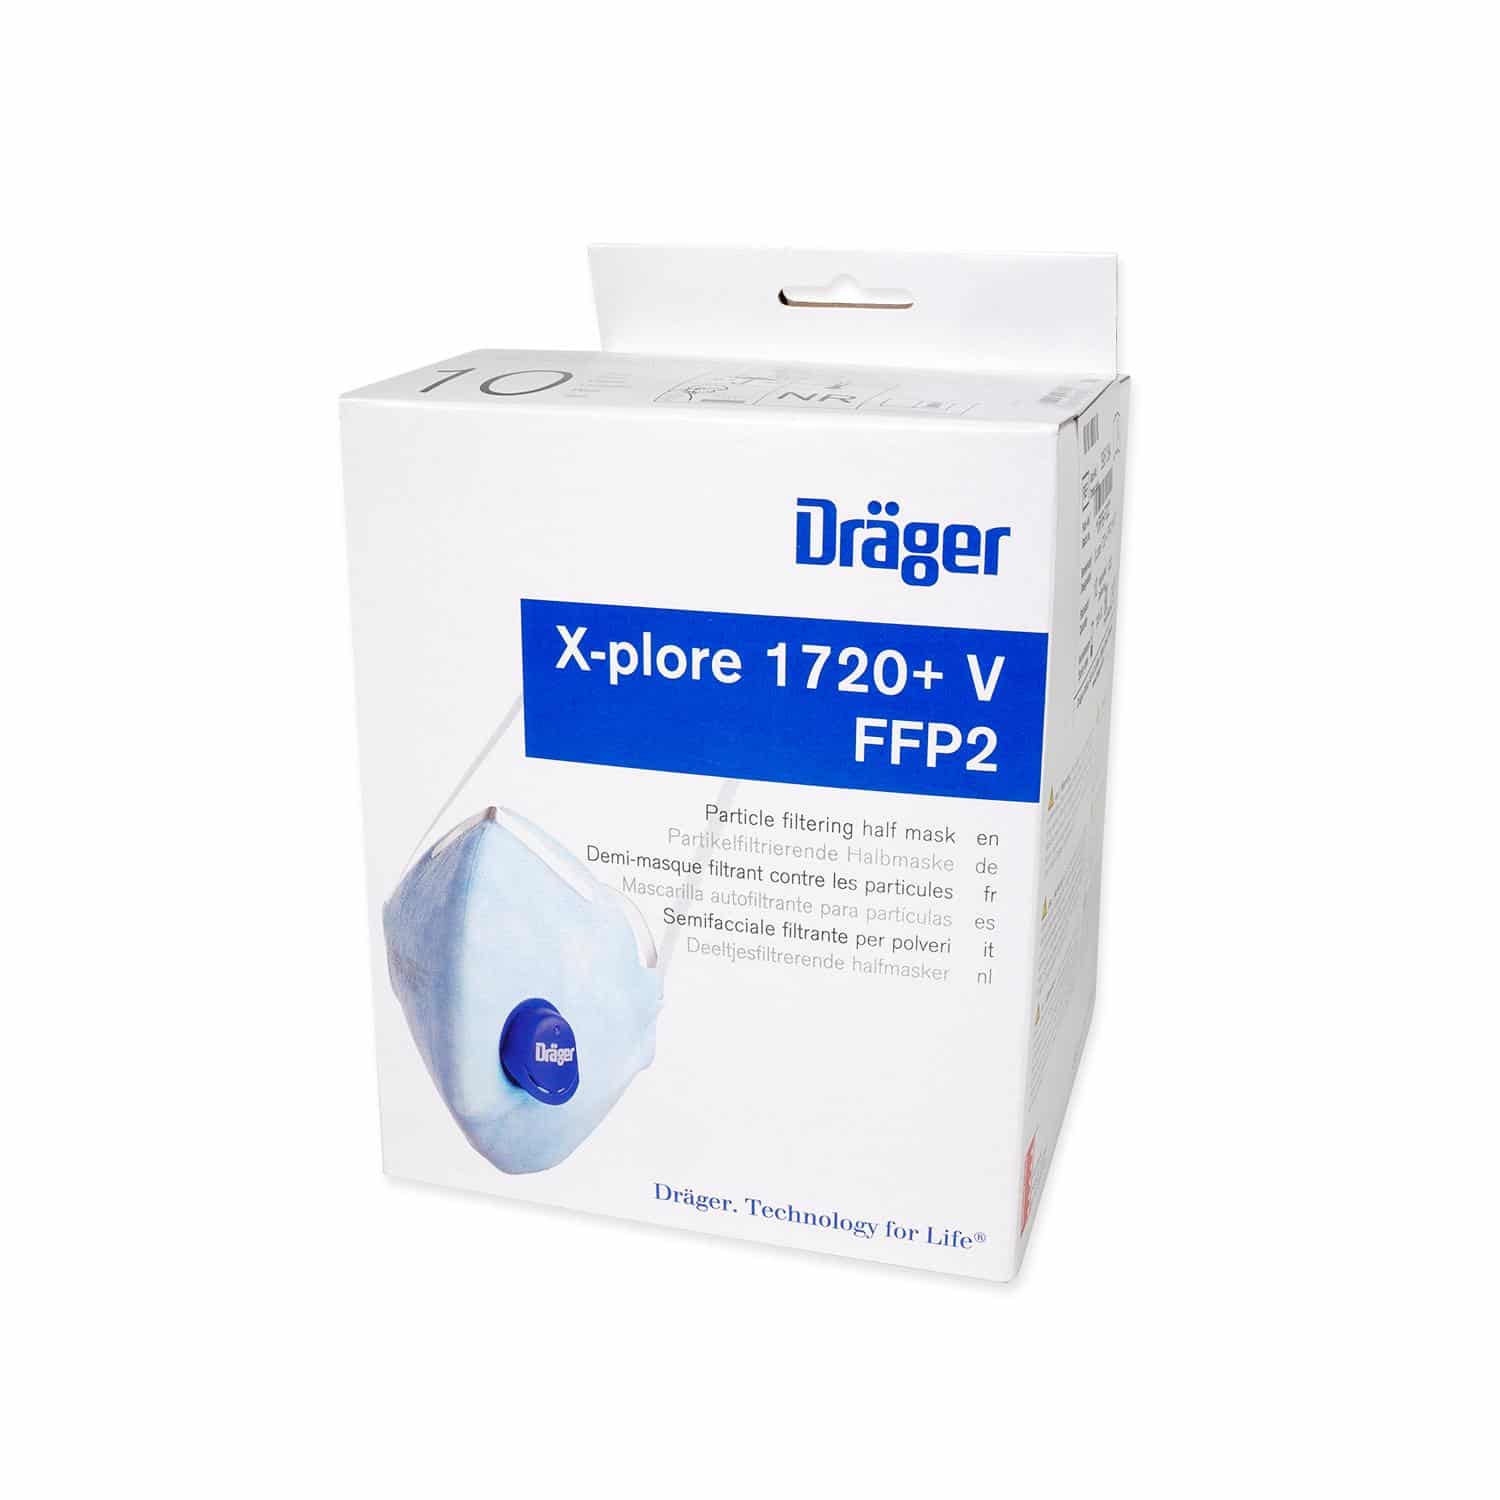 draeger-x-plore-1720-plus-ffp2-atemschutz-verpackung